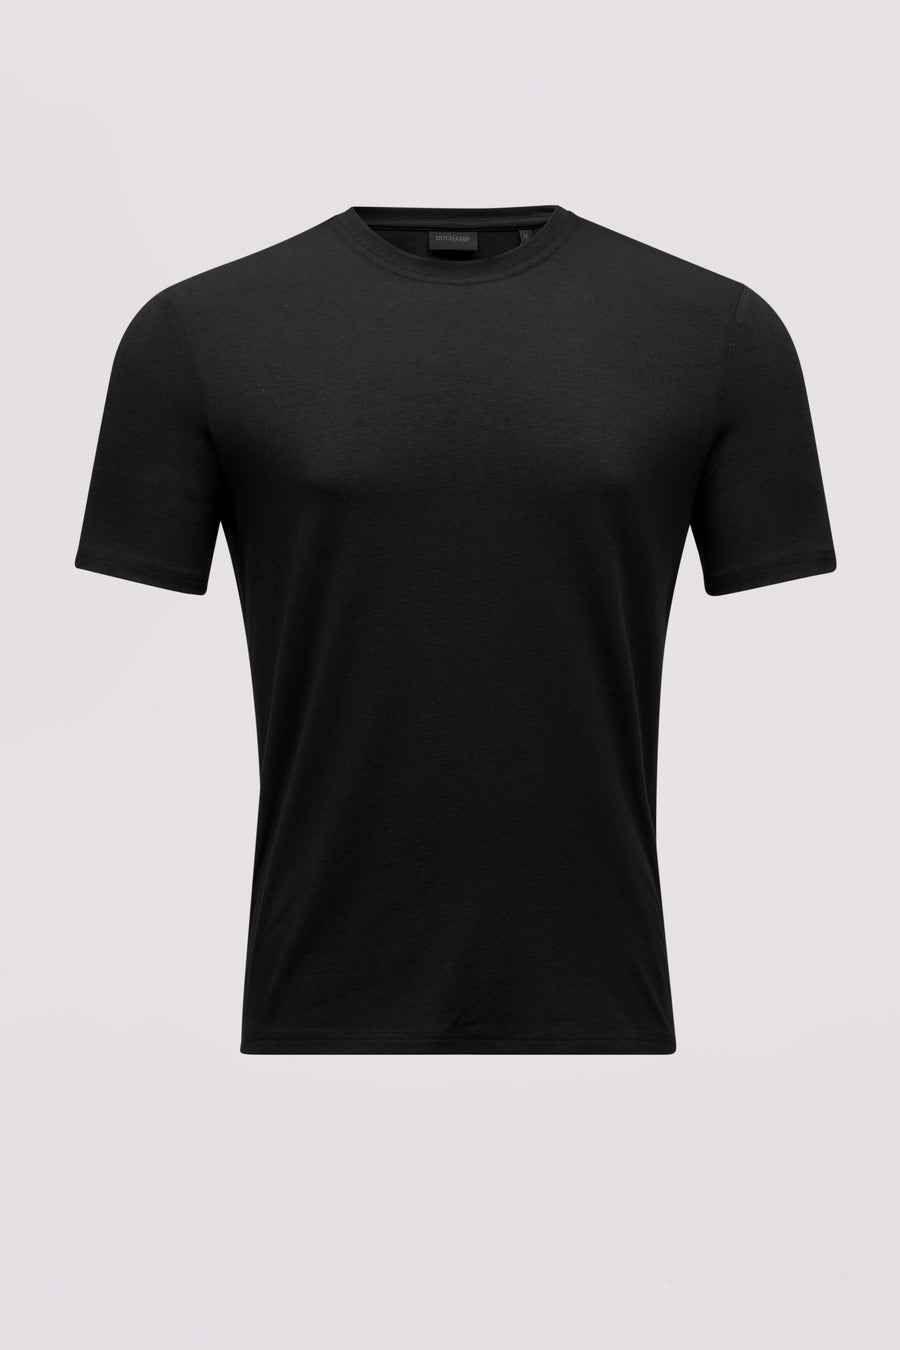 Lounge Wear T-Shirt in Black